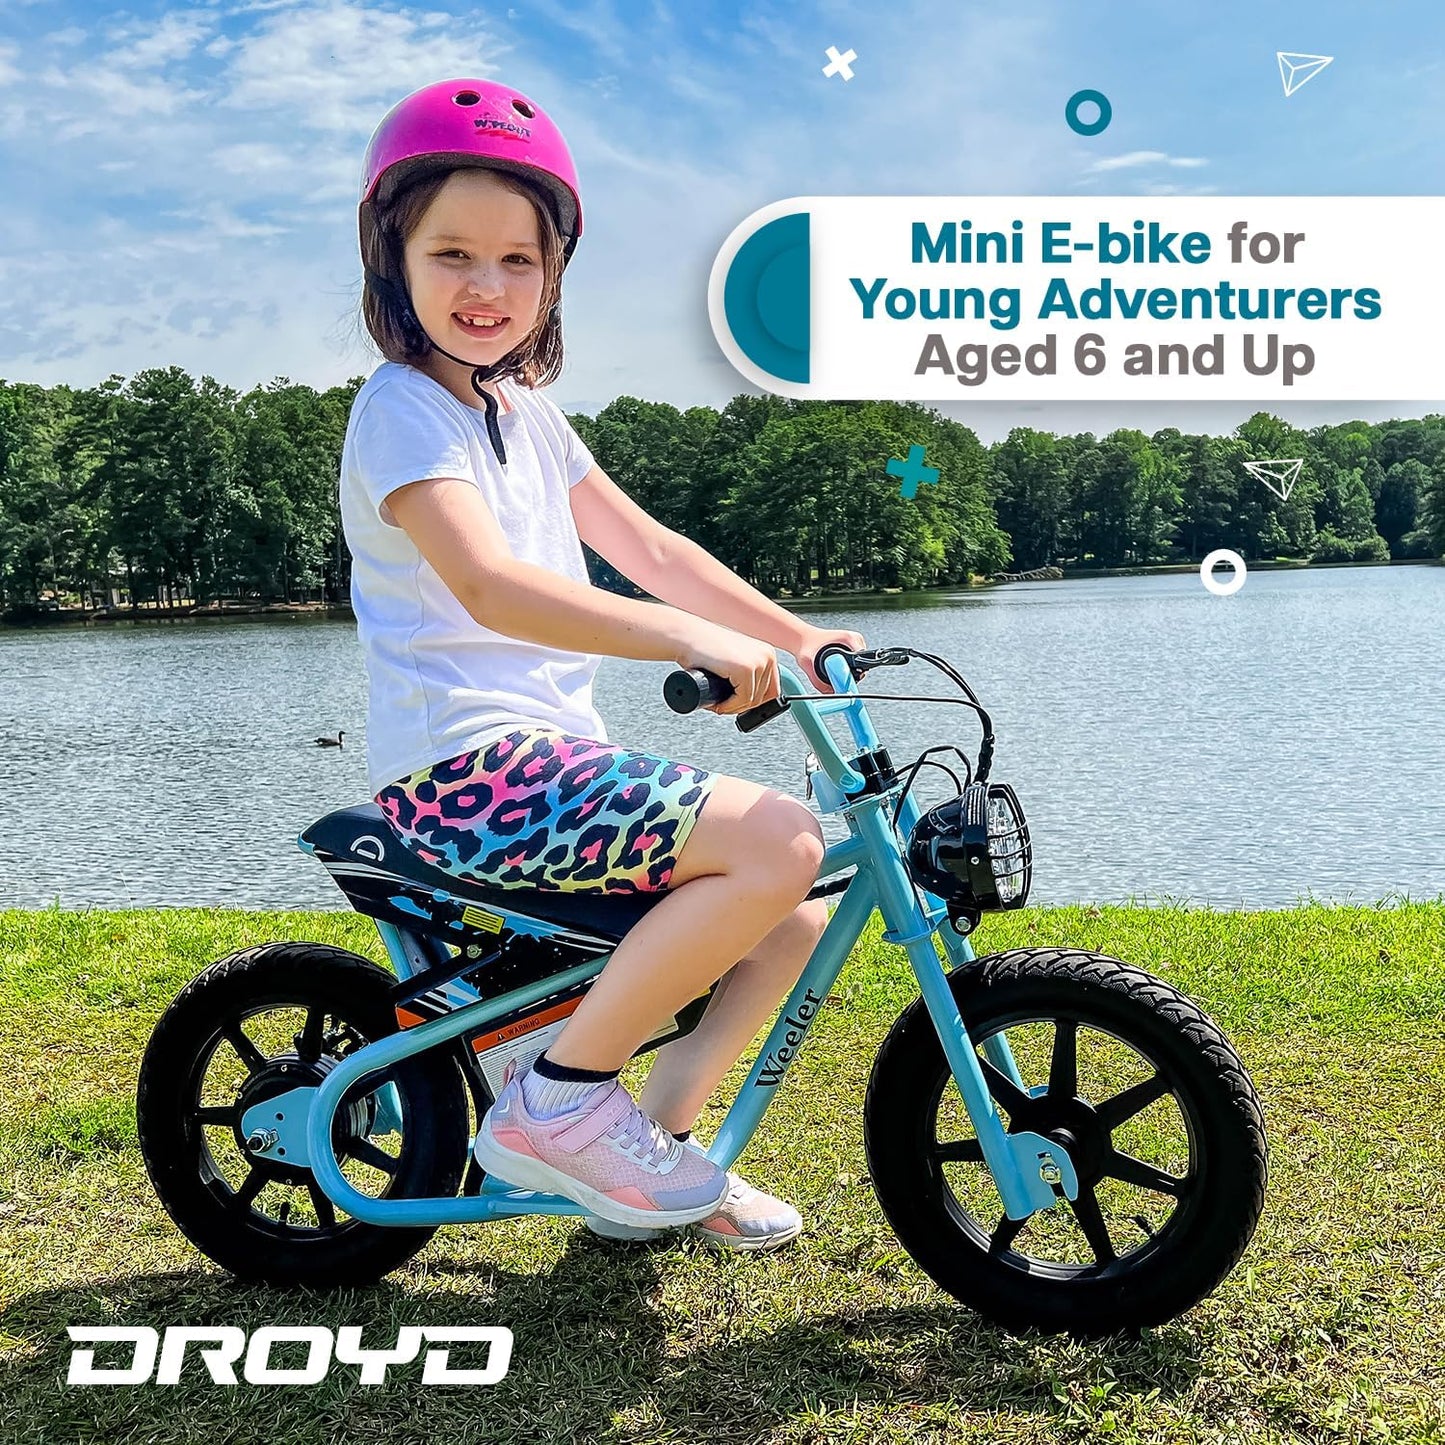 WHITE - The Droyd Weeler Electric Mini Bike - Electric Bike for Kids Ages 6 & Up - 200W Electric Bike w 6.2-10MPH up to 8 Miles - E Bike for Kids up to 45 Mins Run Time w 14in Tire, 24V 8Ah Battery